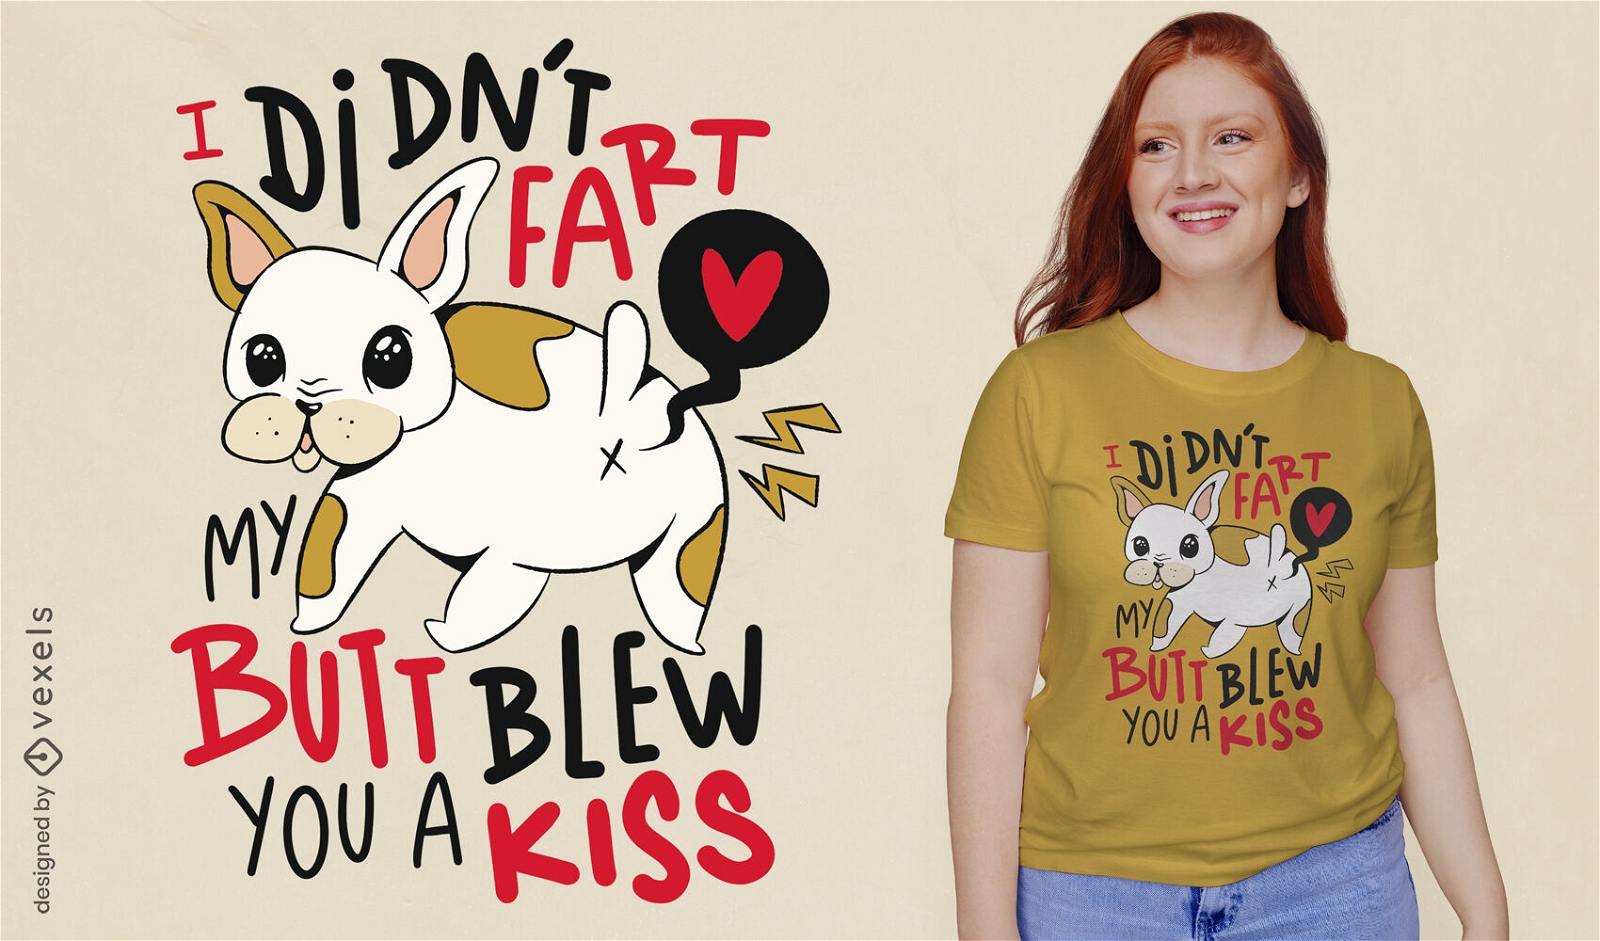 Funny fart french bulldog dog t-shirt design